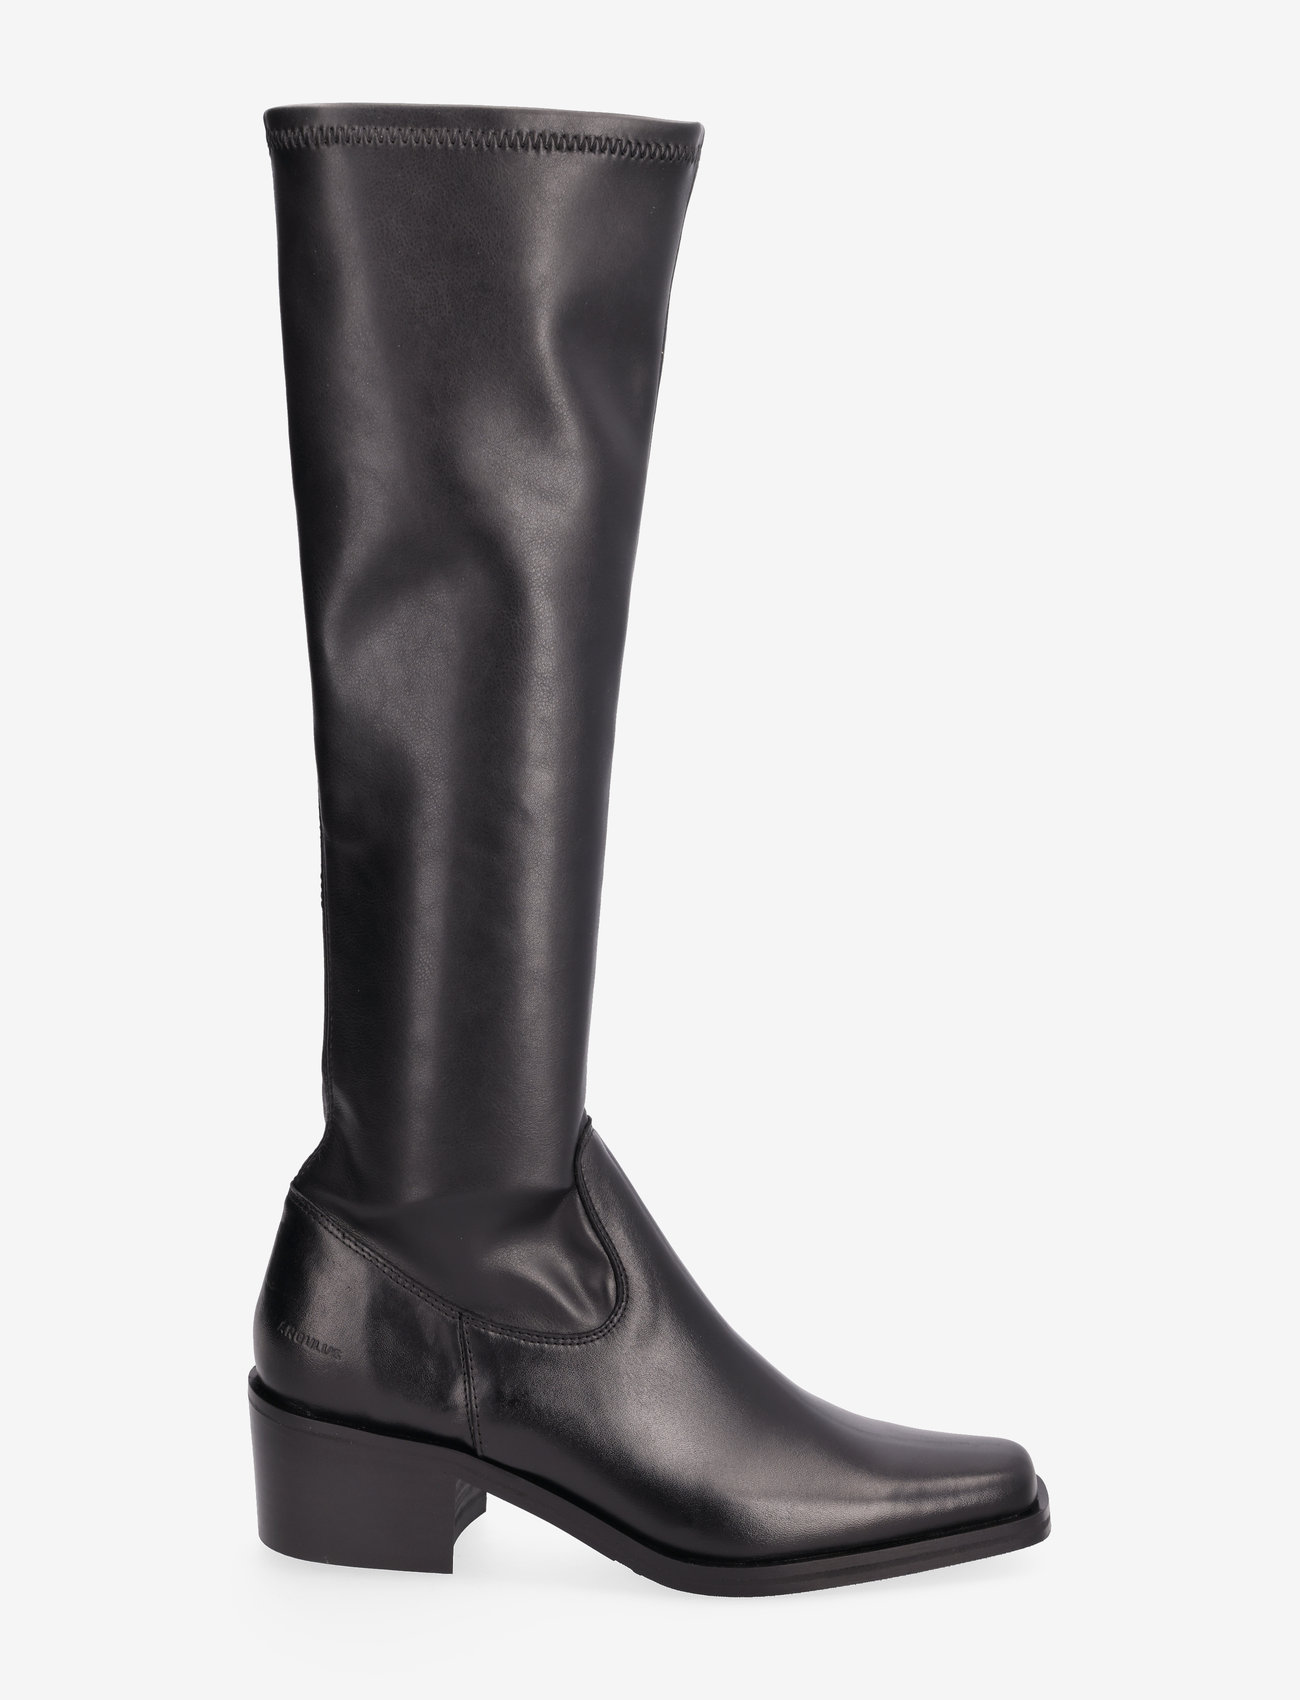 ANGULUS - Boots - Block heel - lange laarzen - 1604/1746 black/black - 1